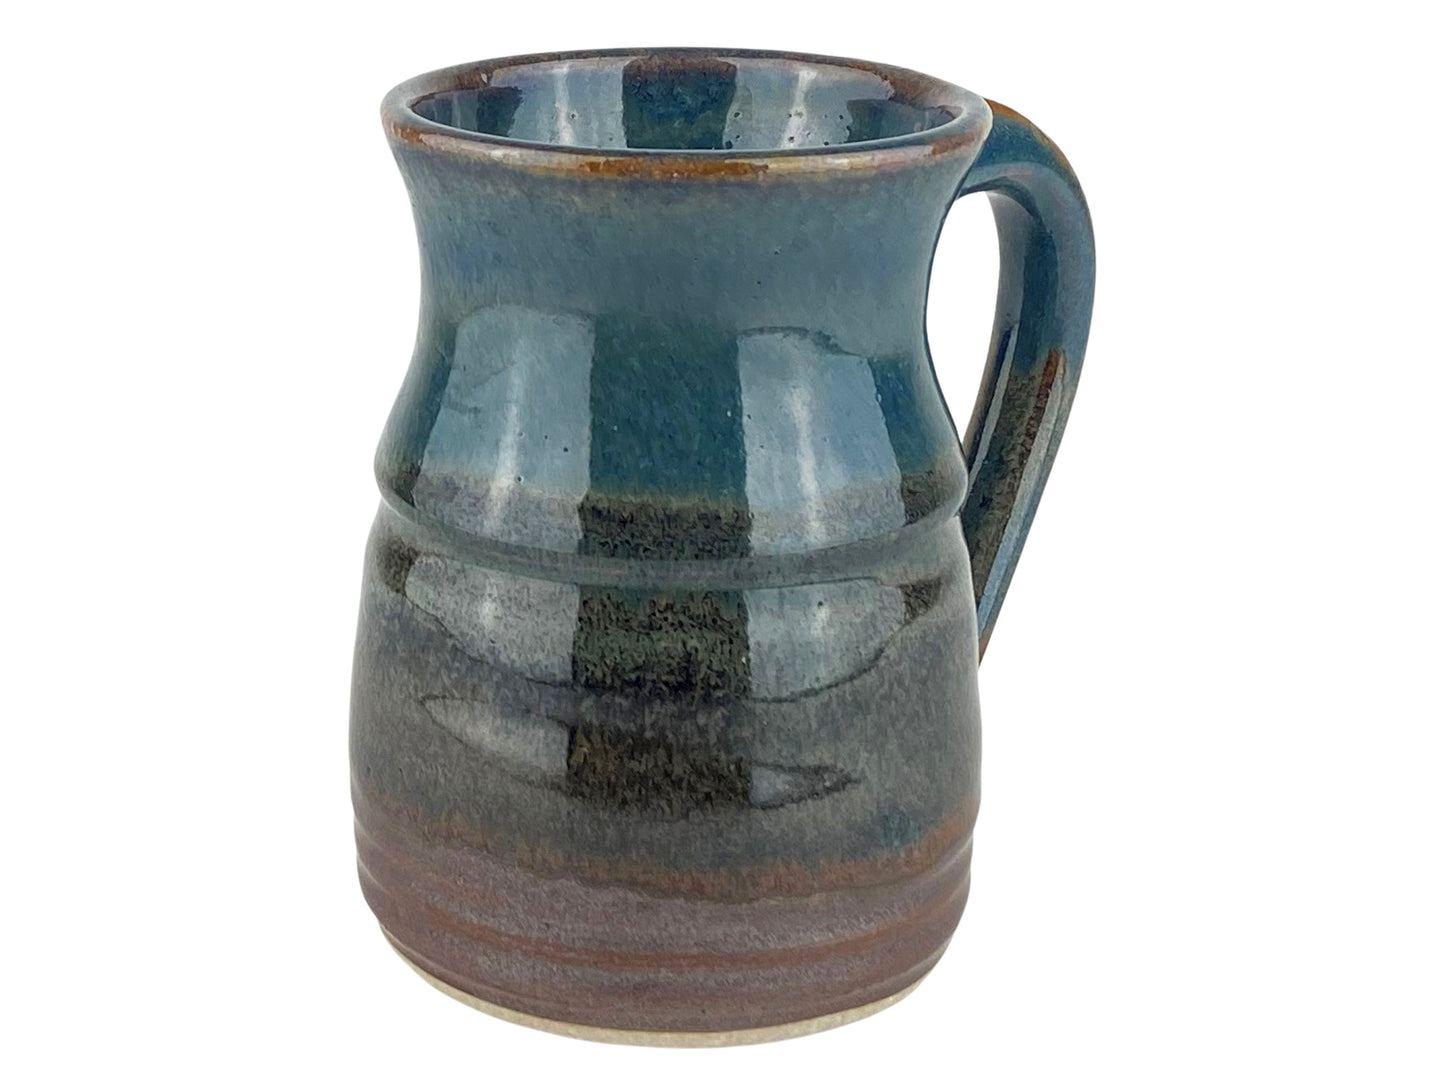 15 oz. Stoneware Coffee Mug